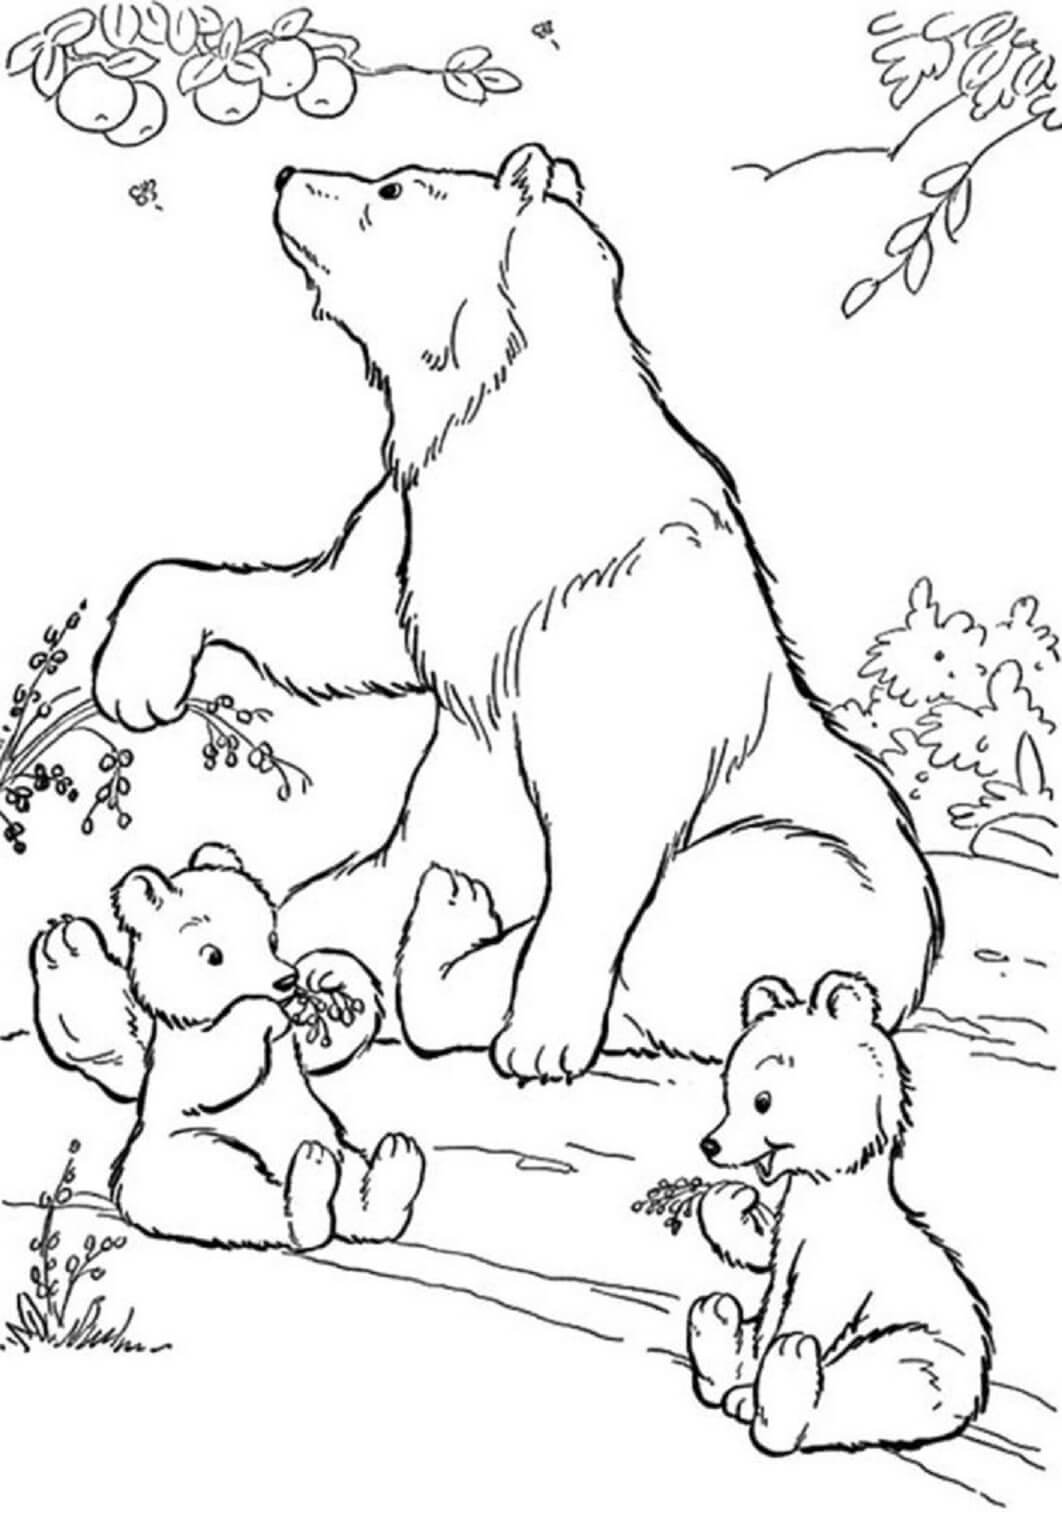 الدب الأم واثنين من الدببة الصغيرة صورة تلوين